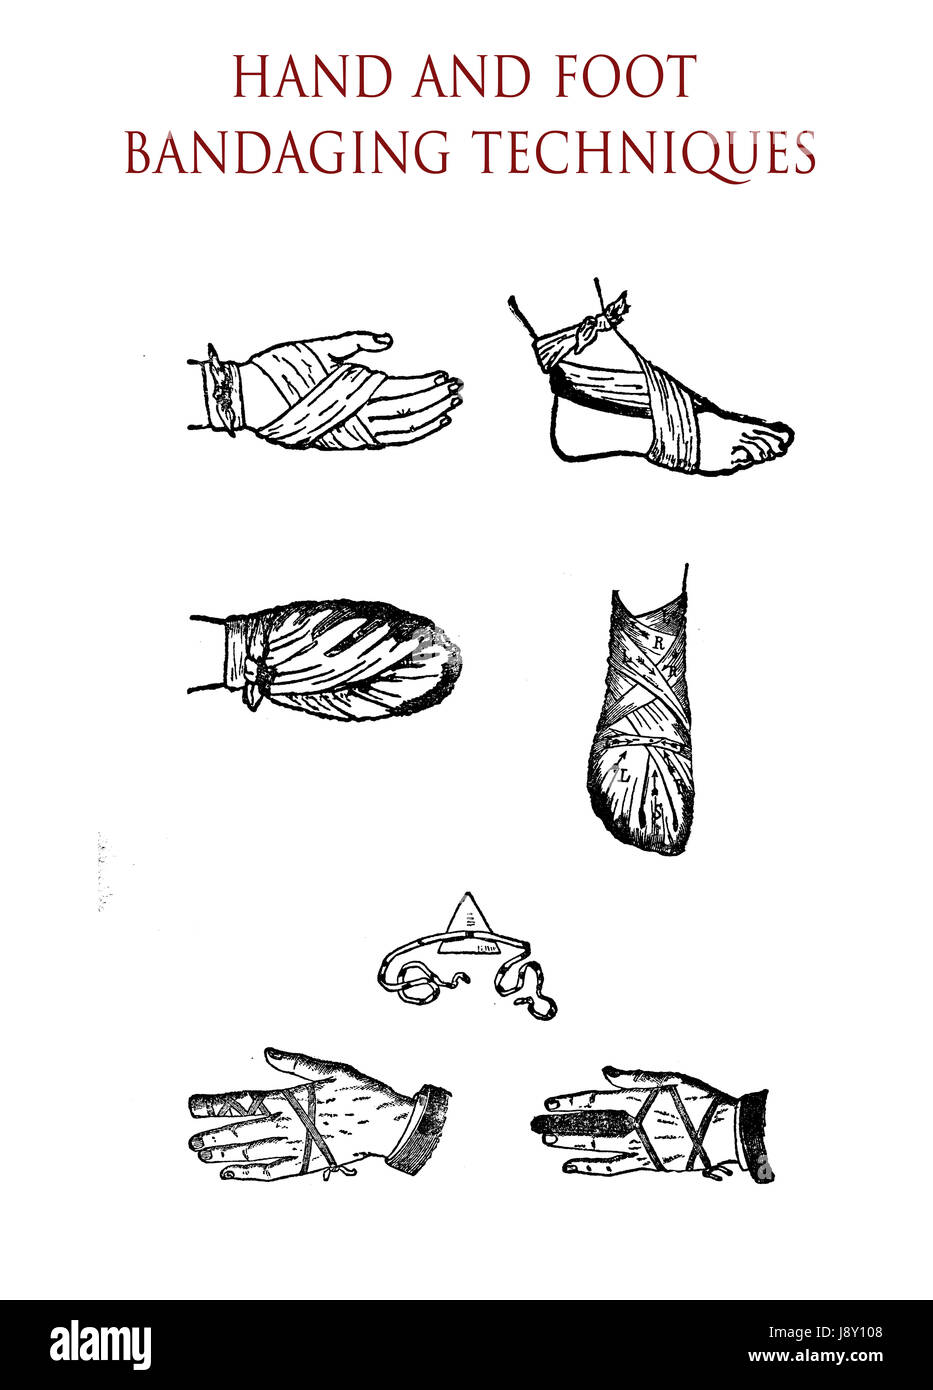 Les techniques de bandage des mains et des pieds Photo Stock - Alamy